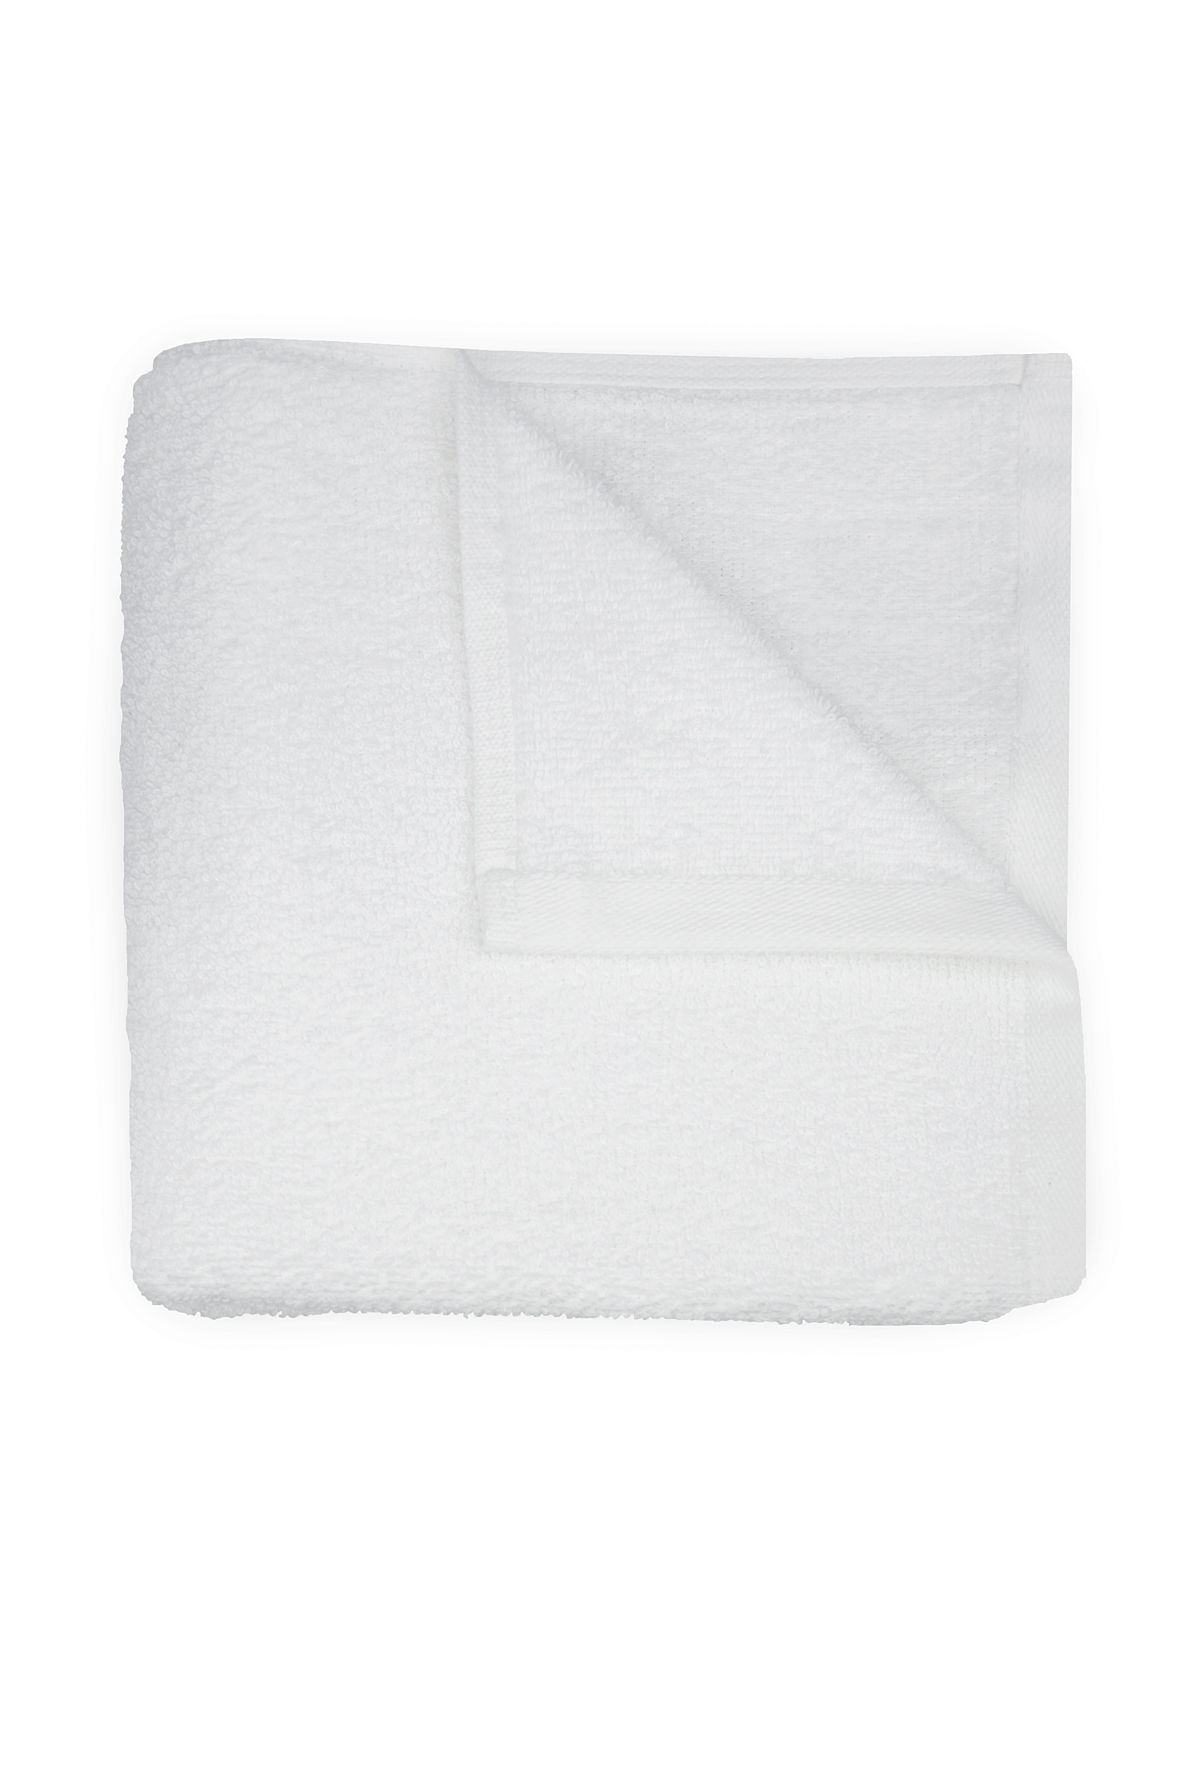 Salon Handdoek Wit kopen